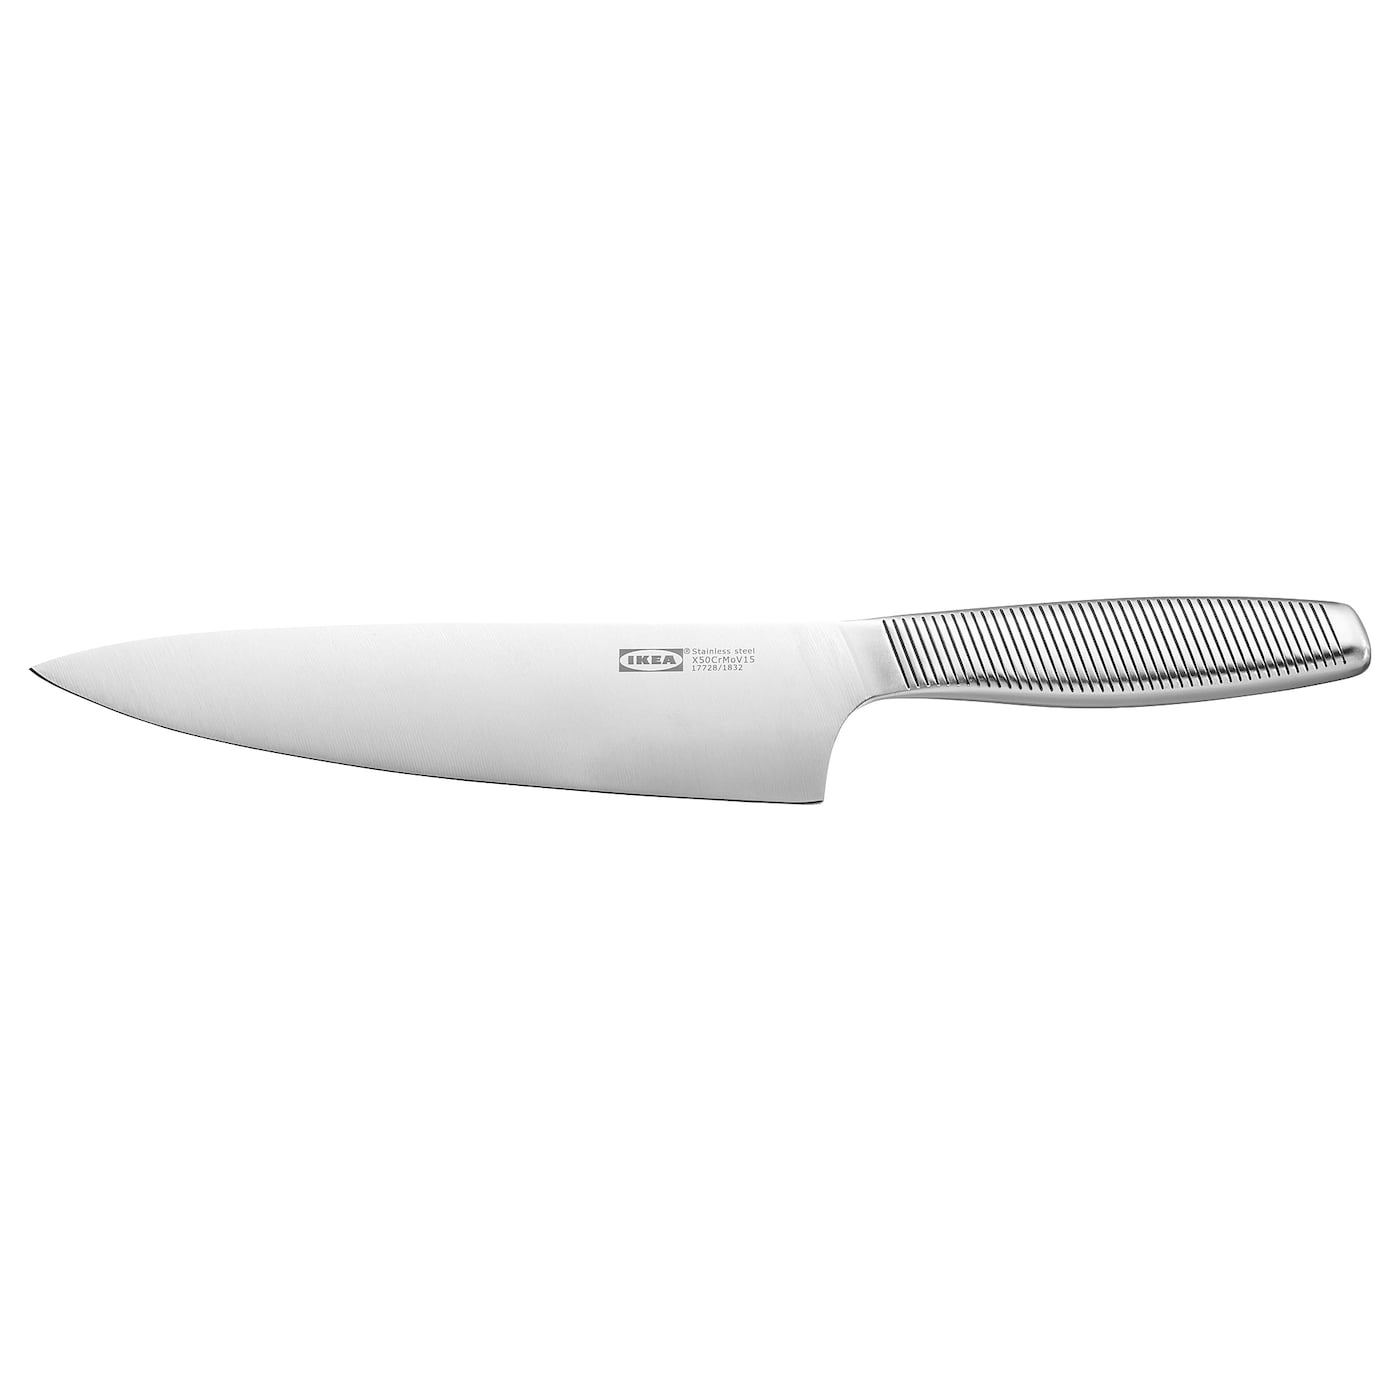 IKEA 365+ ИКЕА/365+ Нож поварской, нержавеющ сталь, 20 см IKEA нож ikea 365 23 см серебряный